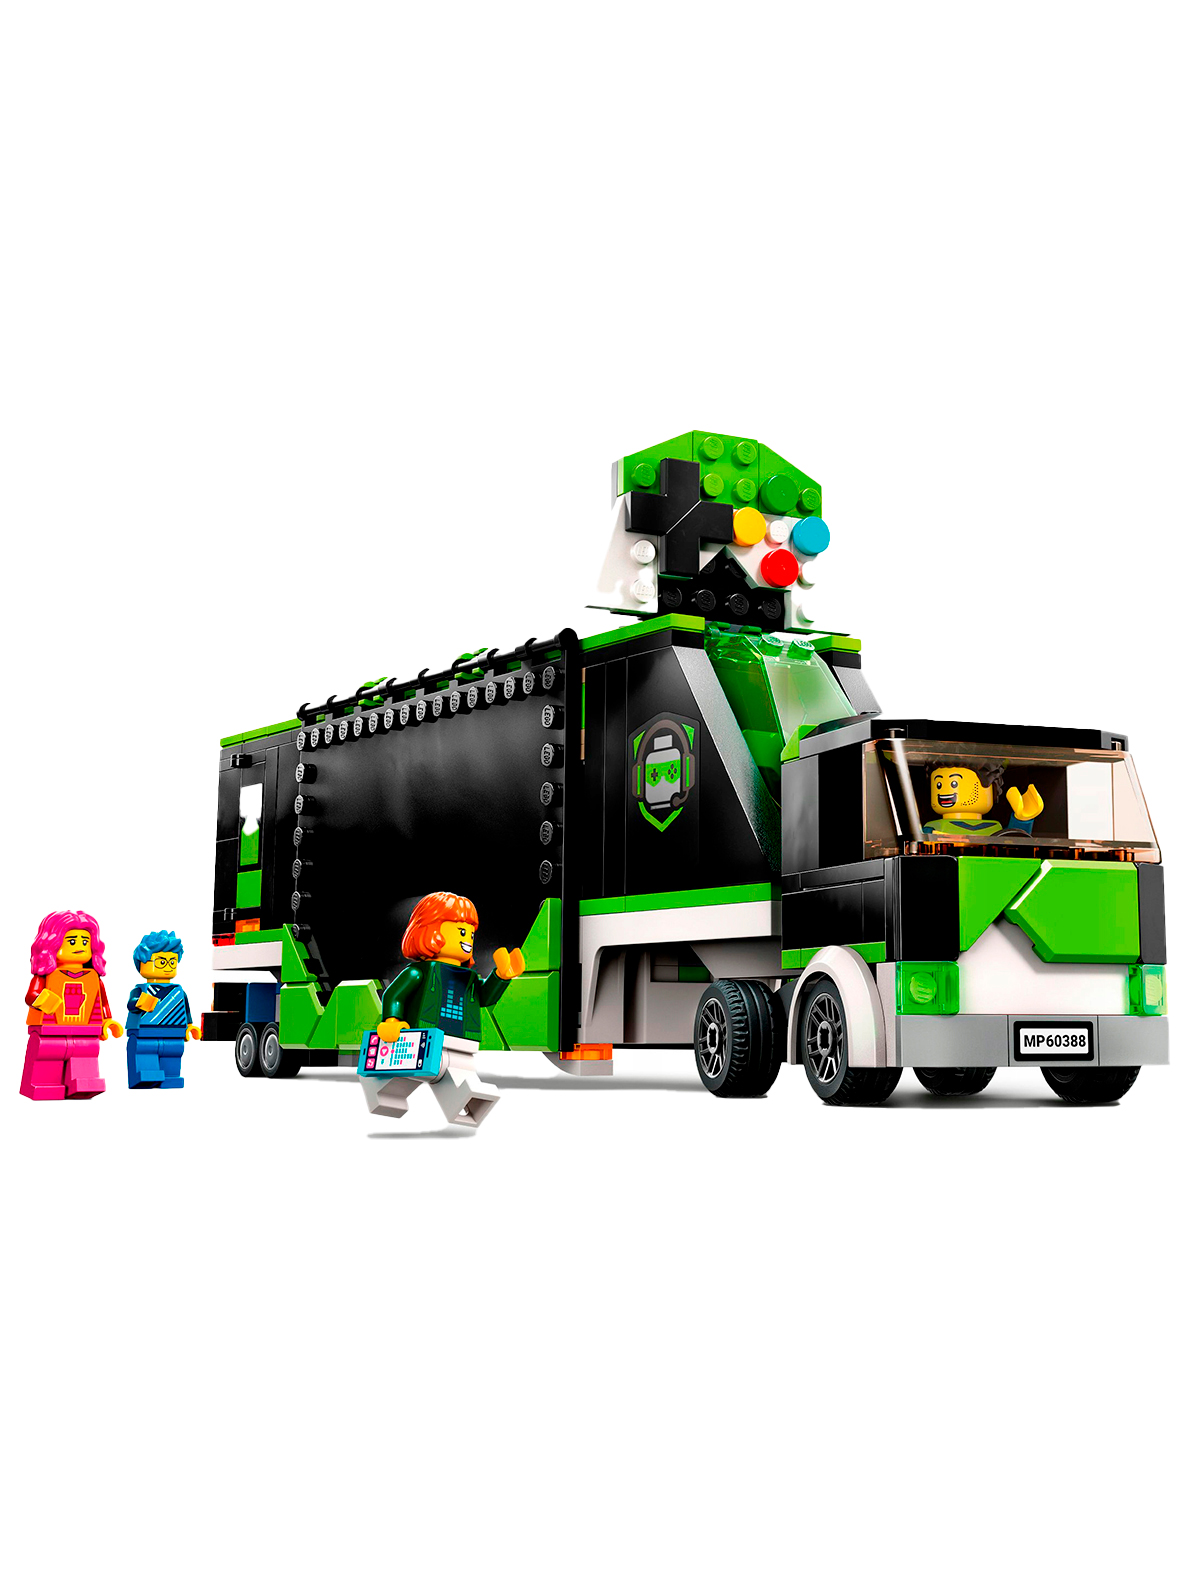 Конструктор LEGO керлинг организация и судейство соревнований правила игры приложение